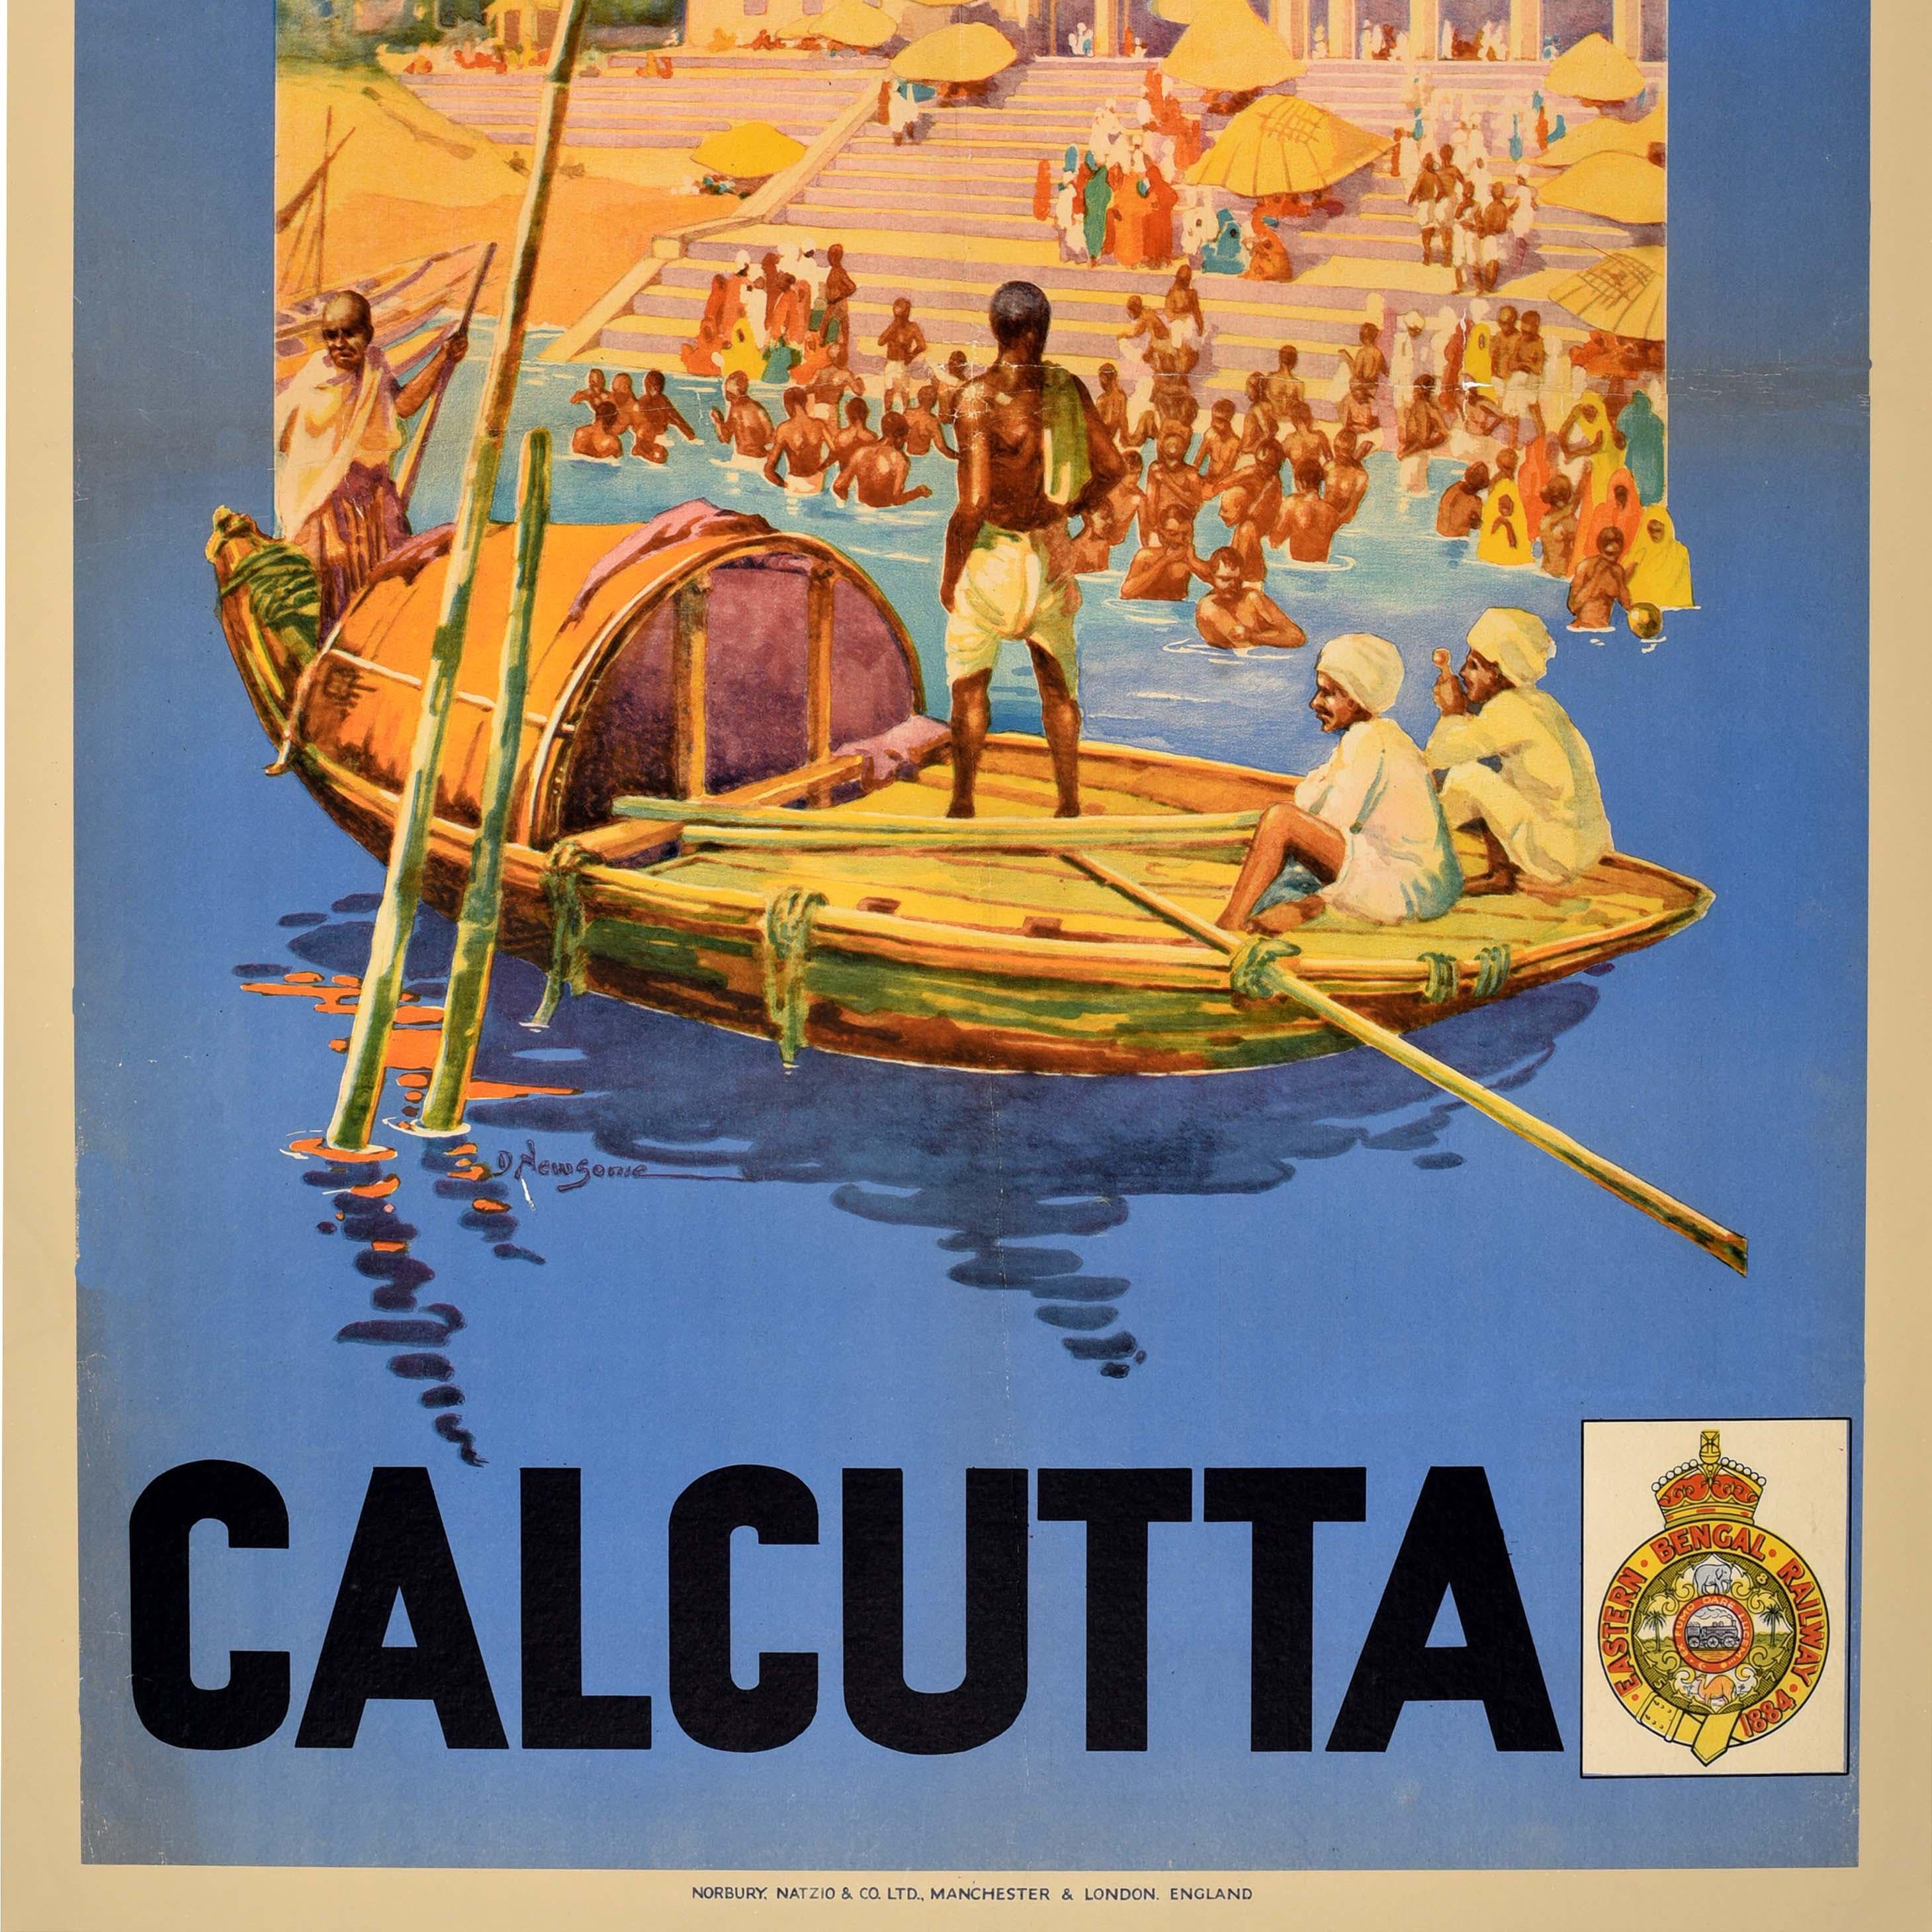 Originales antikes Asien-Reiseplakat für Mullick Ghat Kalkutta / Kolkata in Indien mit einem Kunstwerk der britischen Künstlerin Dorothy Newsome (1900-1980), das Menschen, einige Familien und Kinder zeigt, die sich auf den Ghats treffen und sich